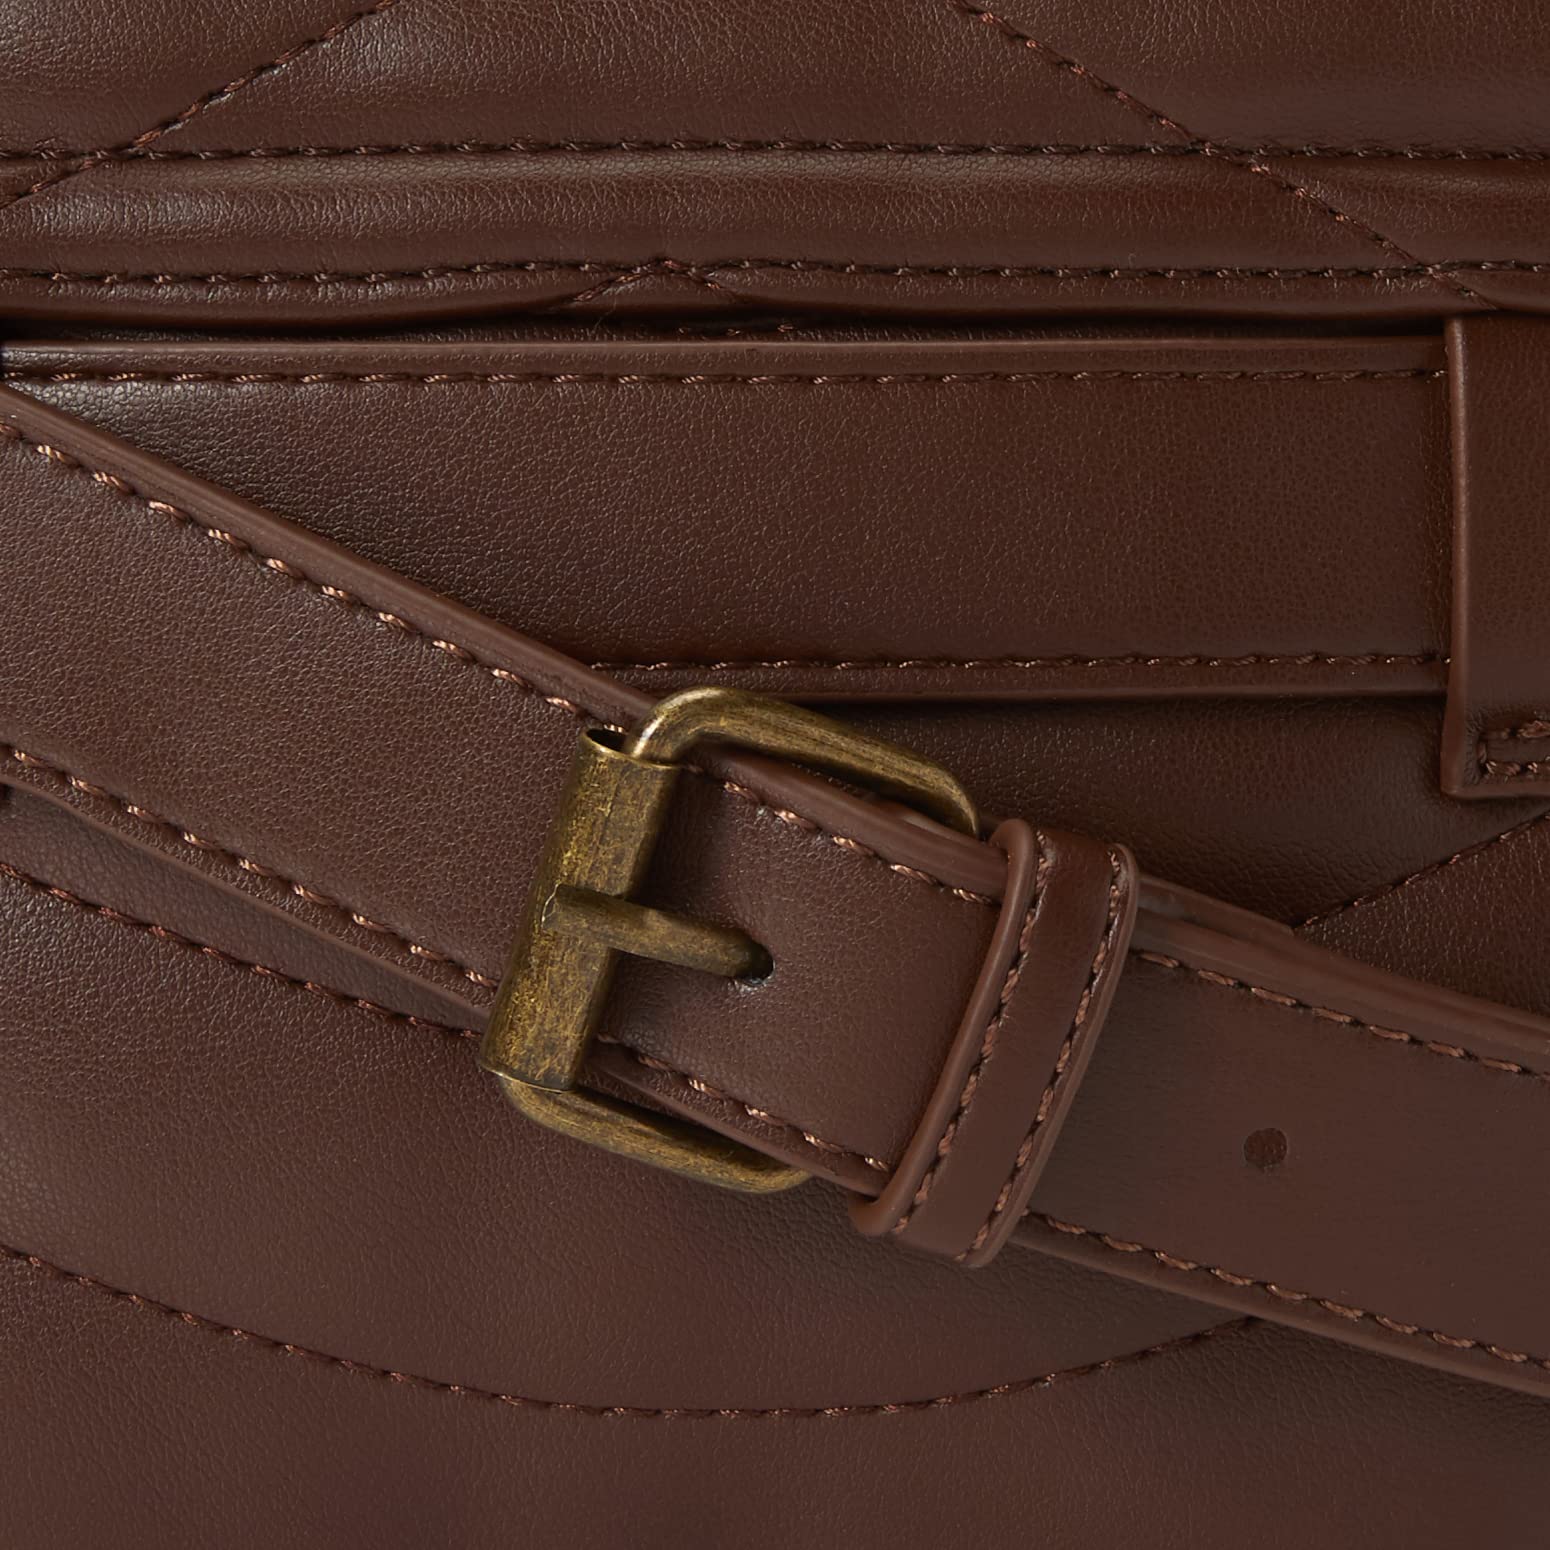 The Drop Women's Rylee Quilted Belt Bag